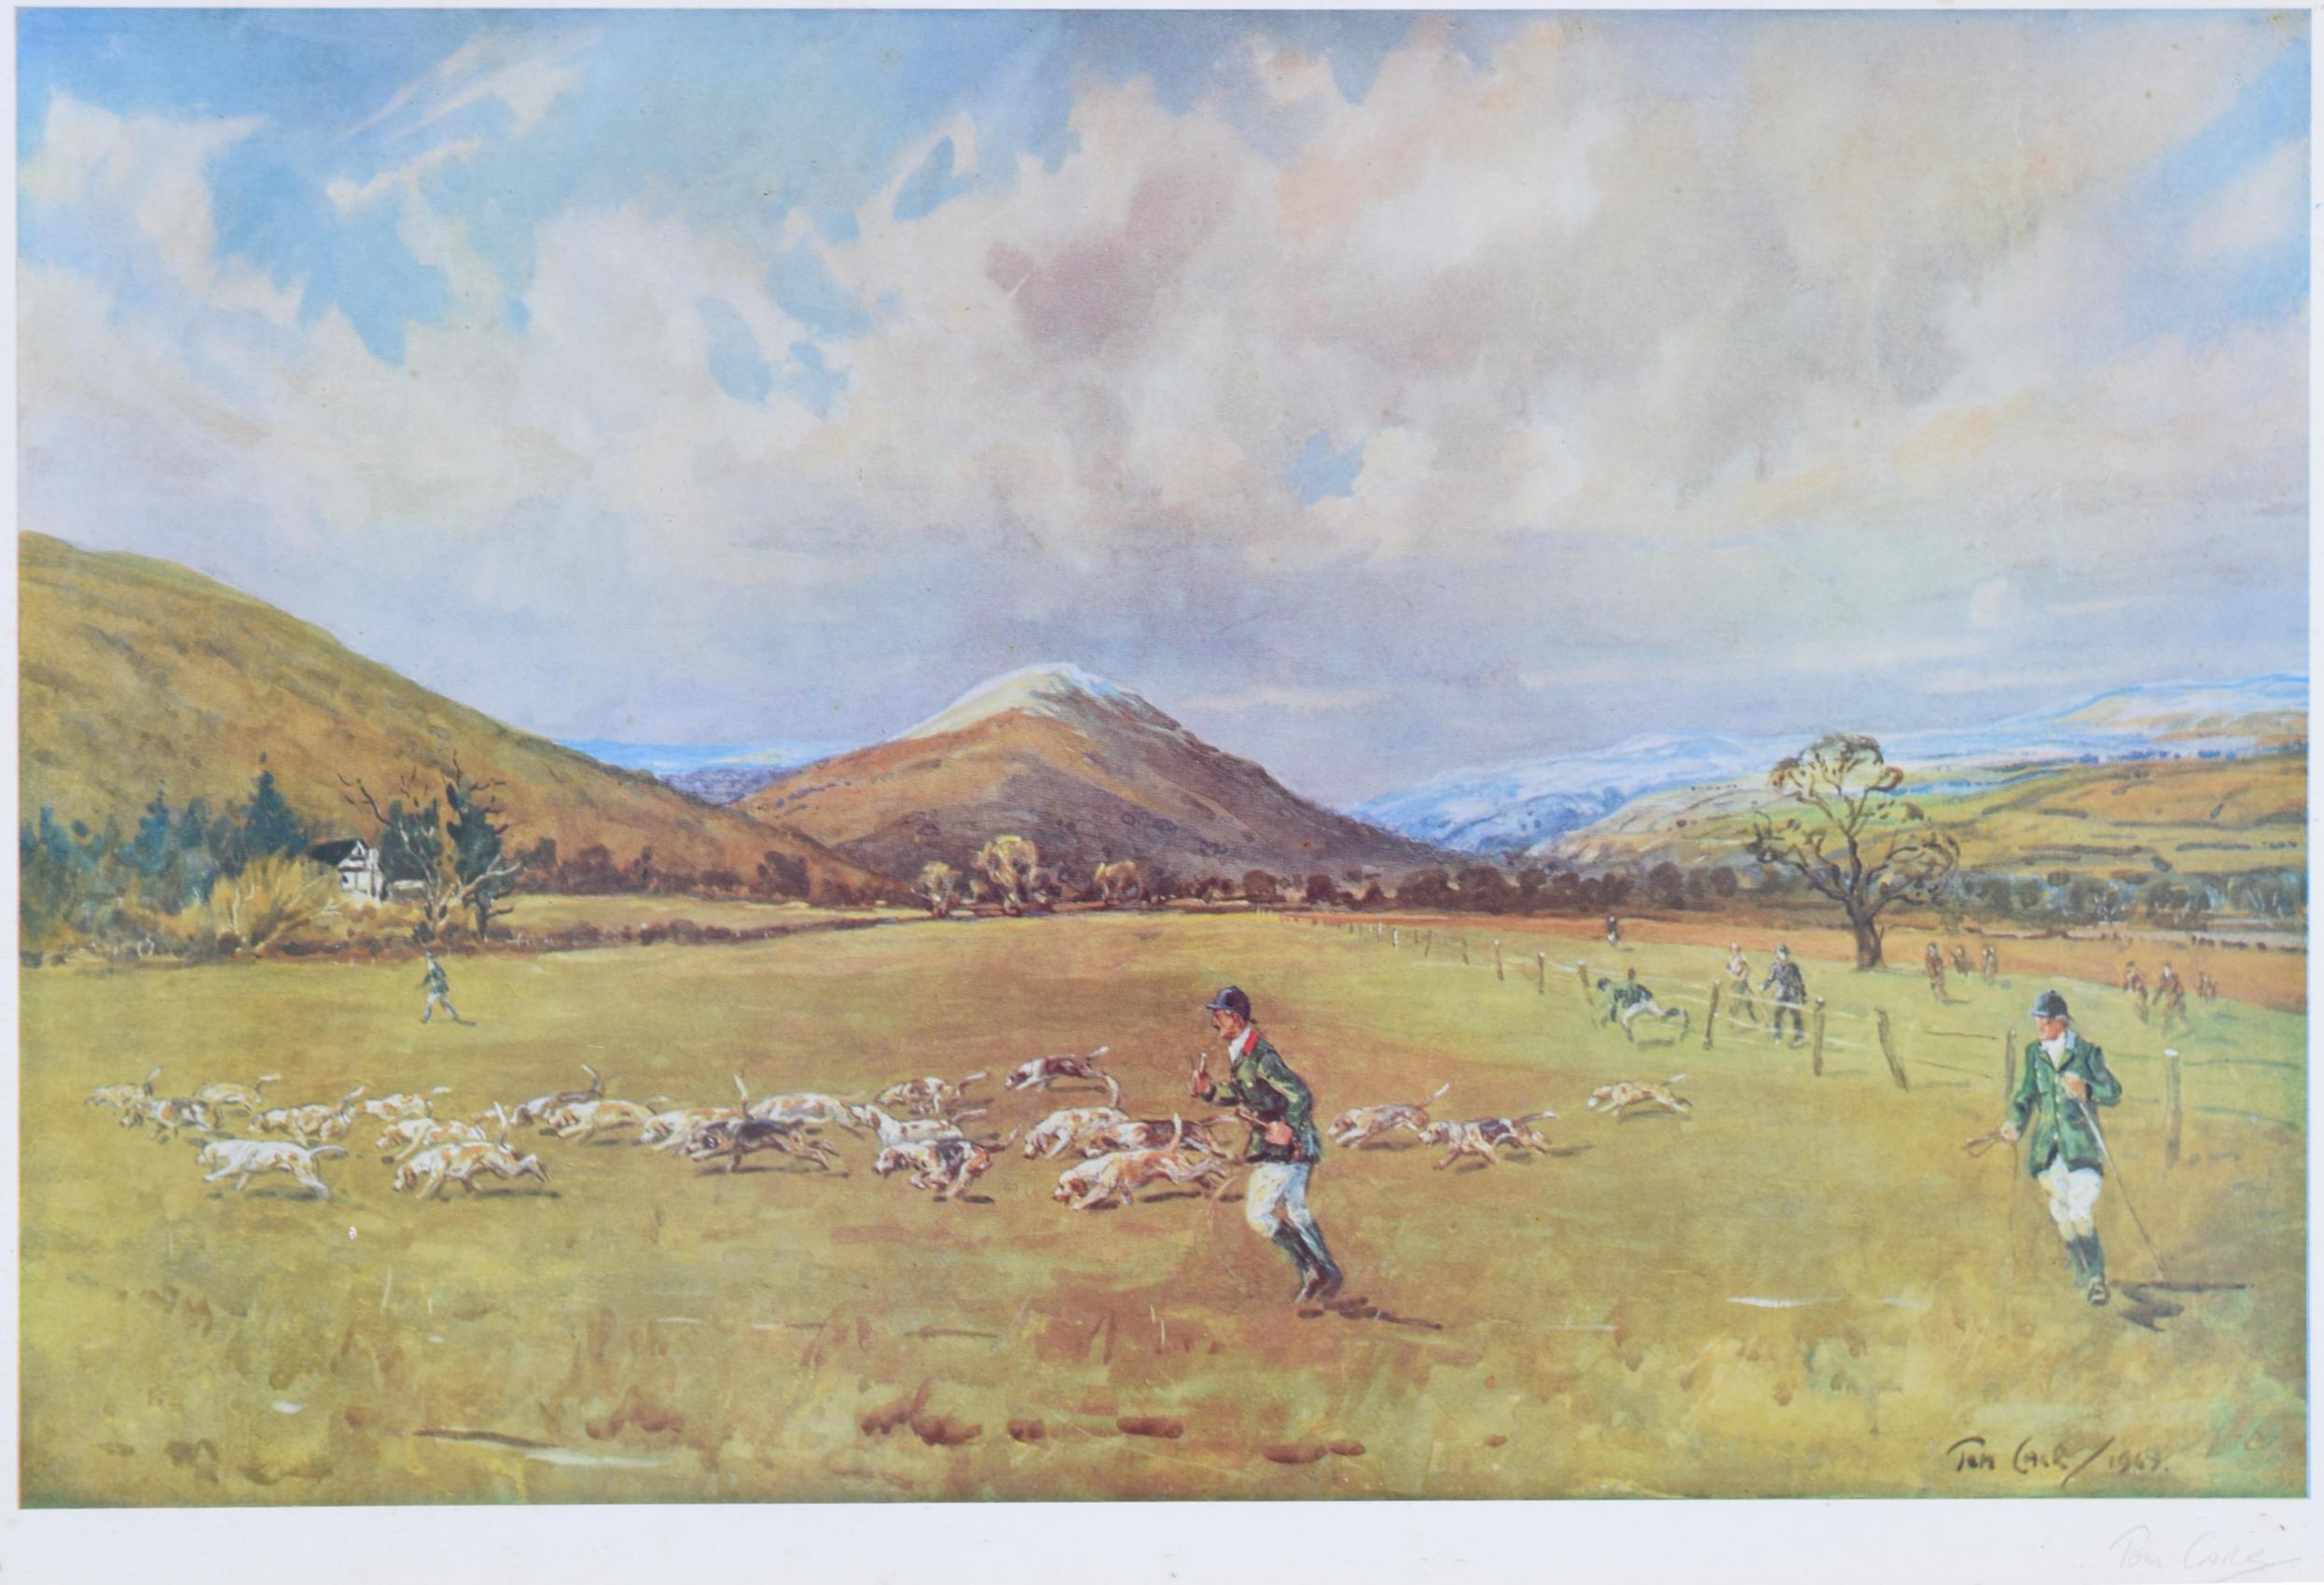 Tom Carrs (1912 - 1977)
Les Shropshire Beagles
Chromolithographie
33 x 48 cm

Signé au crayon en bas à droite.

Gravure de chasse classique de Carrs représentant les Beagles du Shropshire.

Tom Carrs était un peintre de scènes de chasse et de